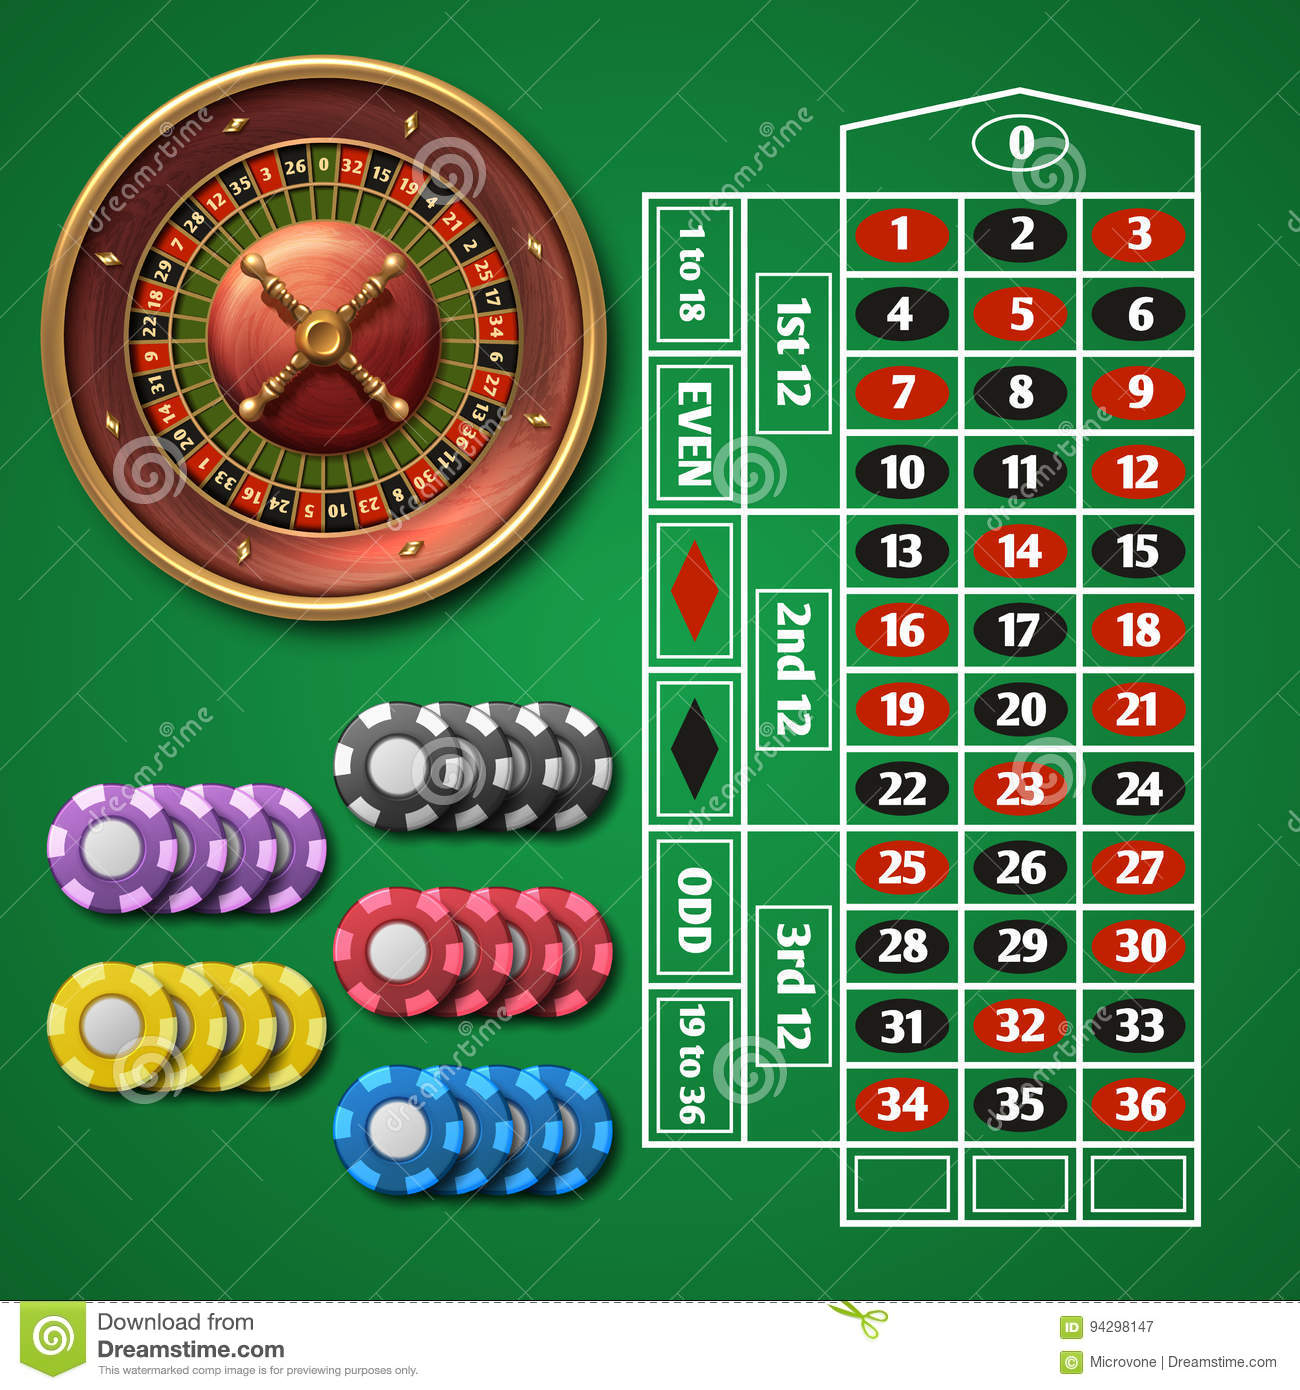 Bonus code mandarin palace casino